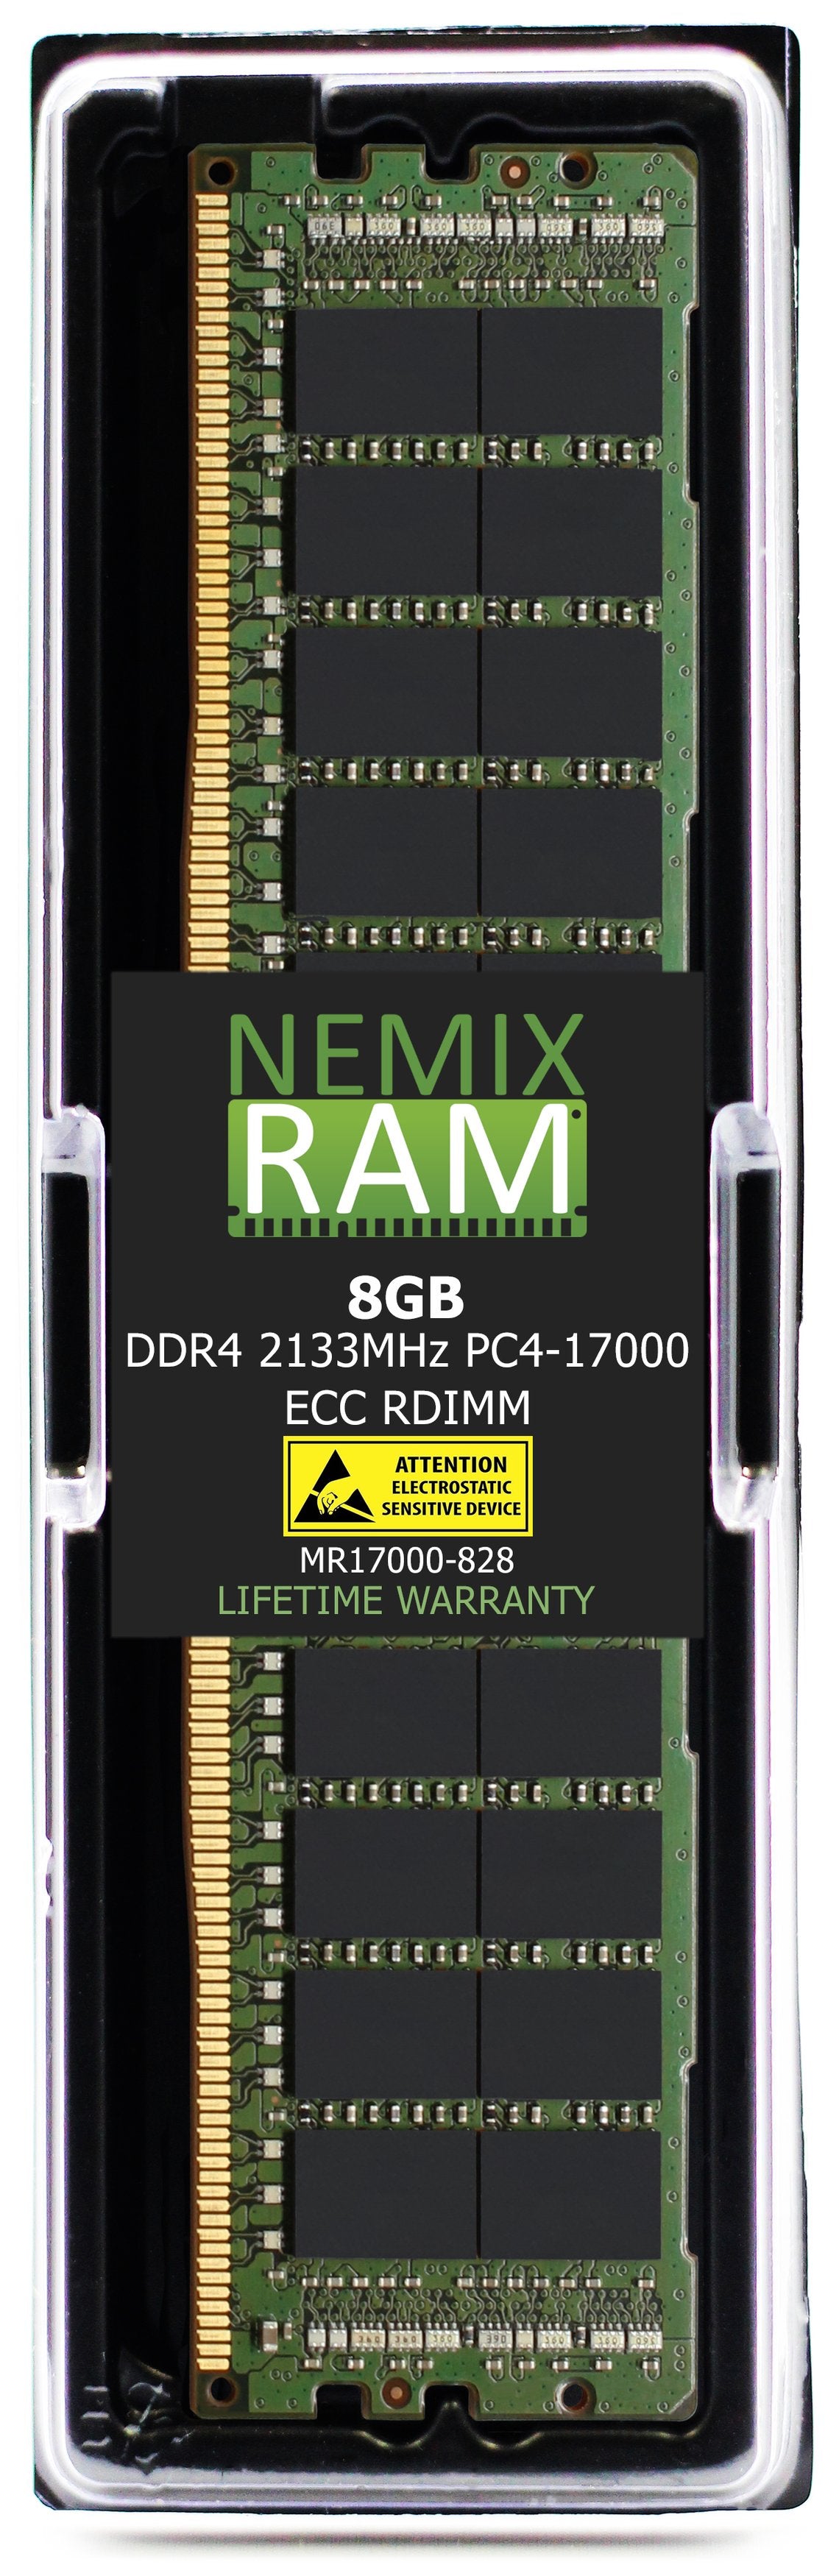 Hynix HMA41GR7MFR8N-TF 8GB DDR4 2133MHZ PC4-17000 RDIMM Compatible Memory Module